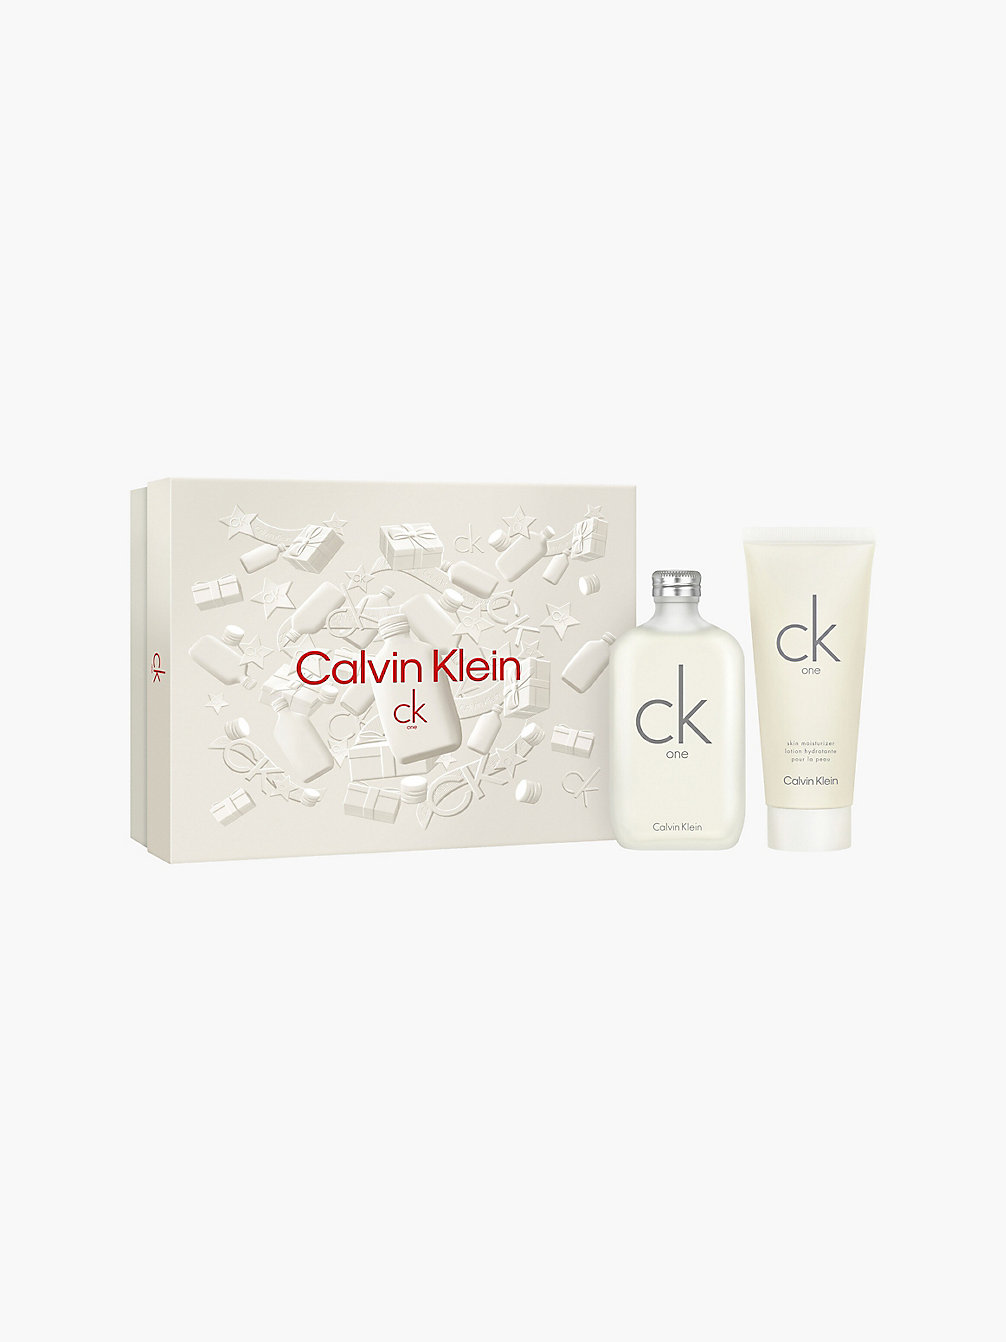 MULTI CK One - Eau De Toilette Gift Set undefined unisex Calvin Klein